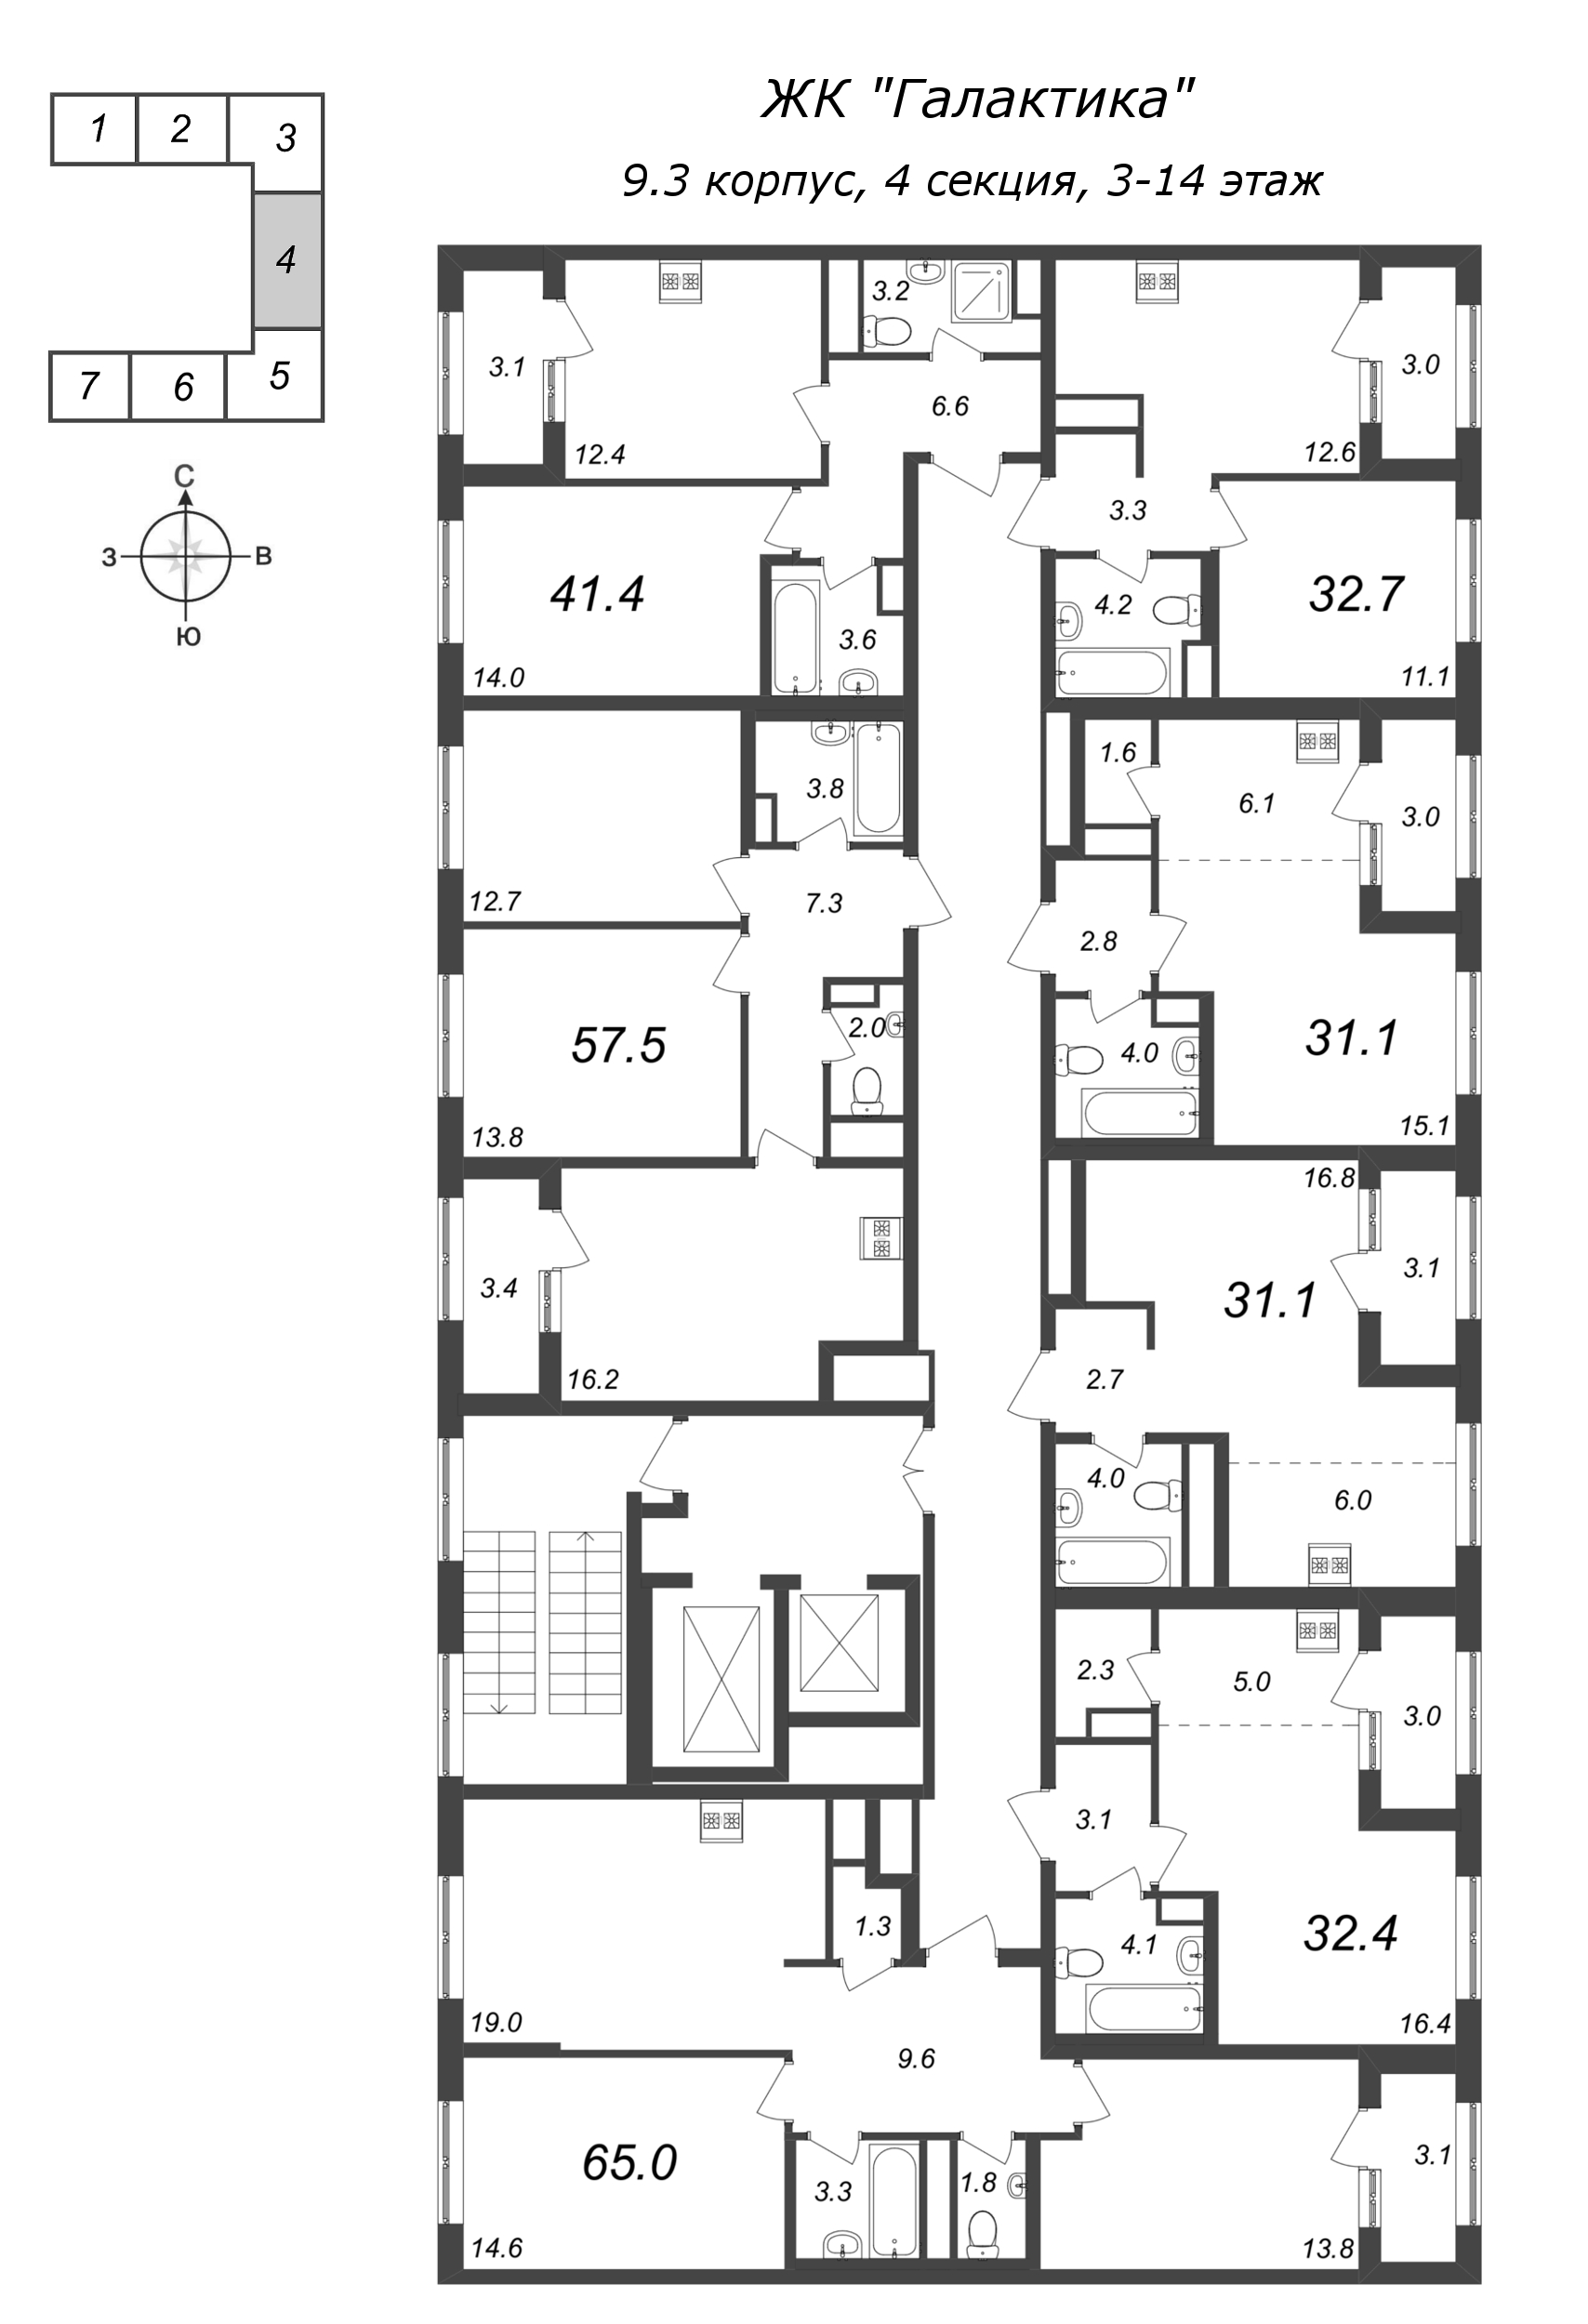 Квартира-студия, 31.2 м² в ЖК "Галактика" - планировка этажа